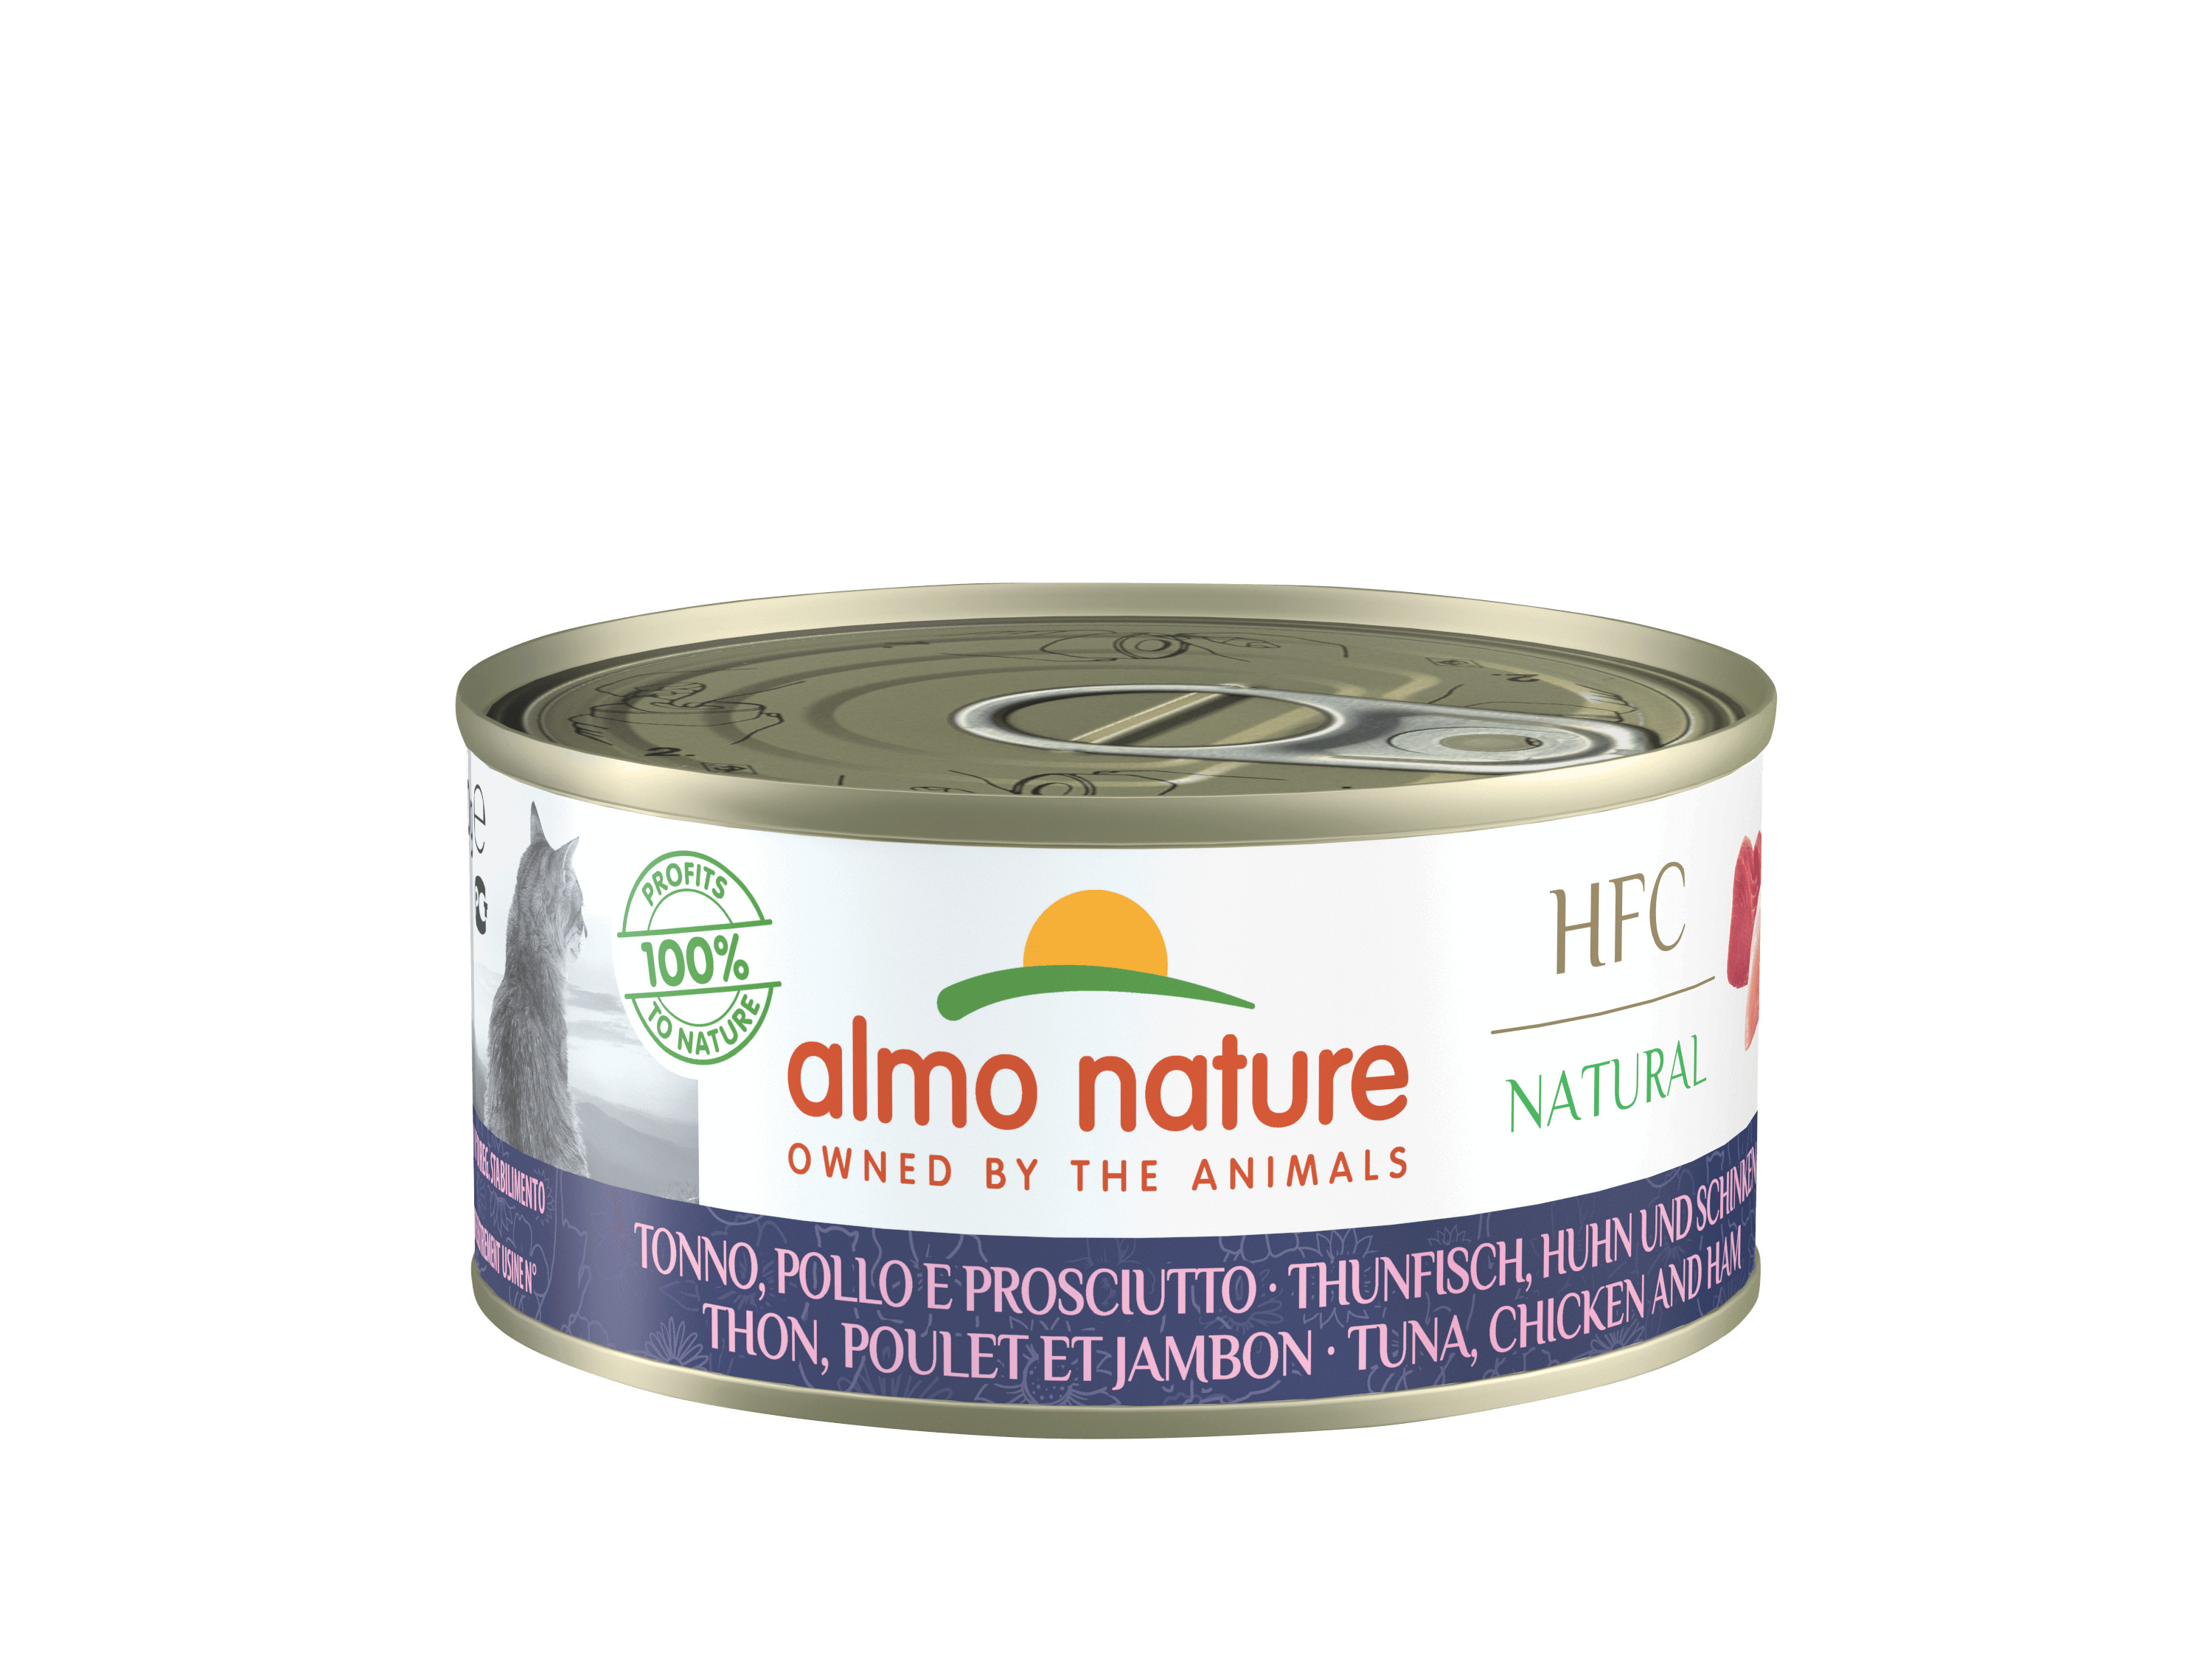 Almo Nature HFC au thon, poulet et jambon pour chat (150 g)